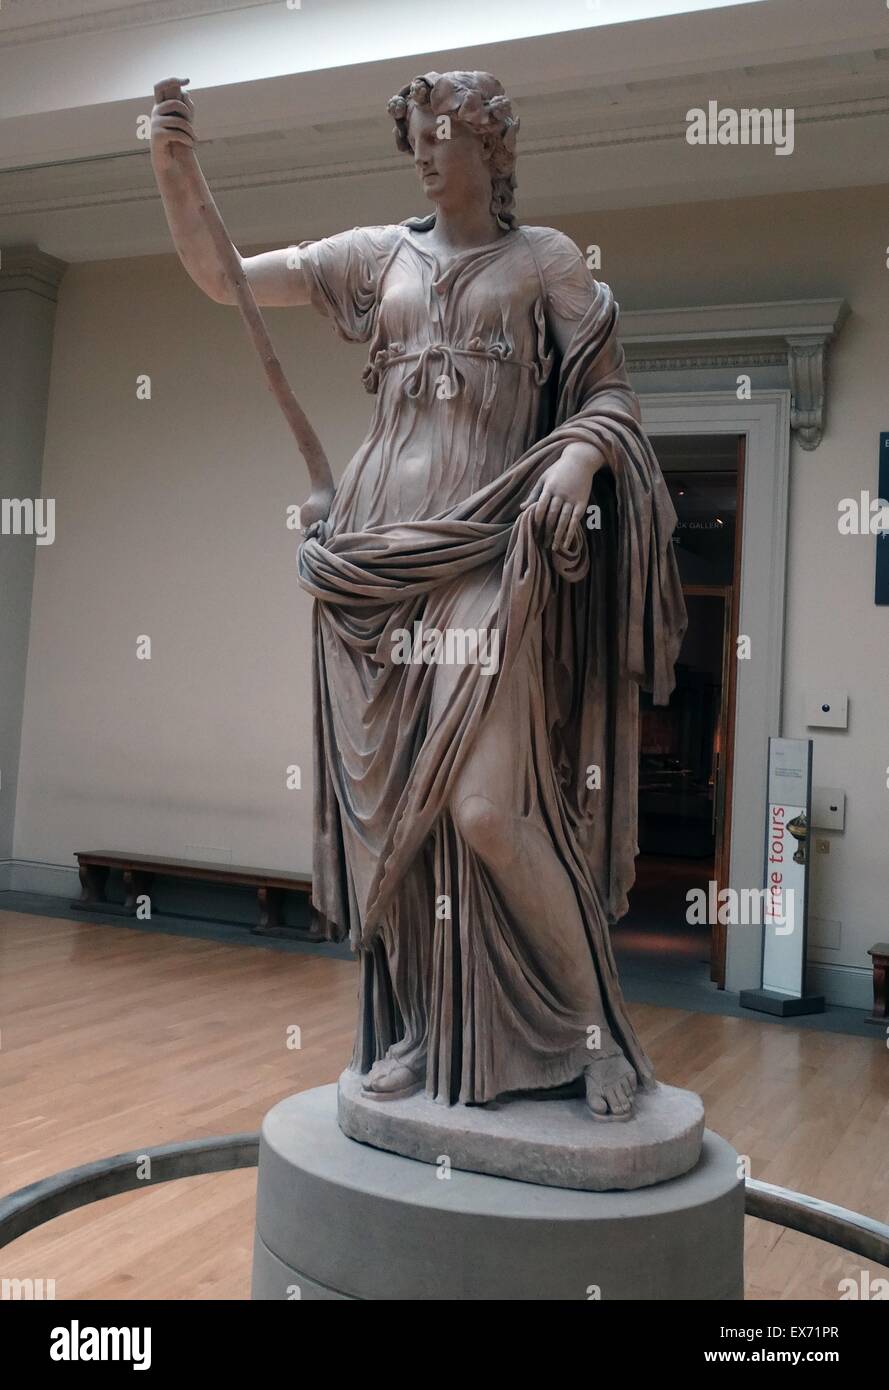 Thalia, die Muse der Komödie Roman, 2. Jh. n. Chr. Statue. ln Mythologie Thalia war eine der neun Musen. Die Musen waren weiblichen Begleiterinnen des Gottes Apollo und der Künste und Wissenschaften gewidmet. Stockfoto